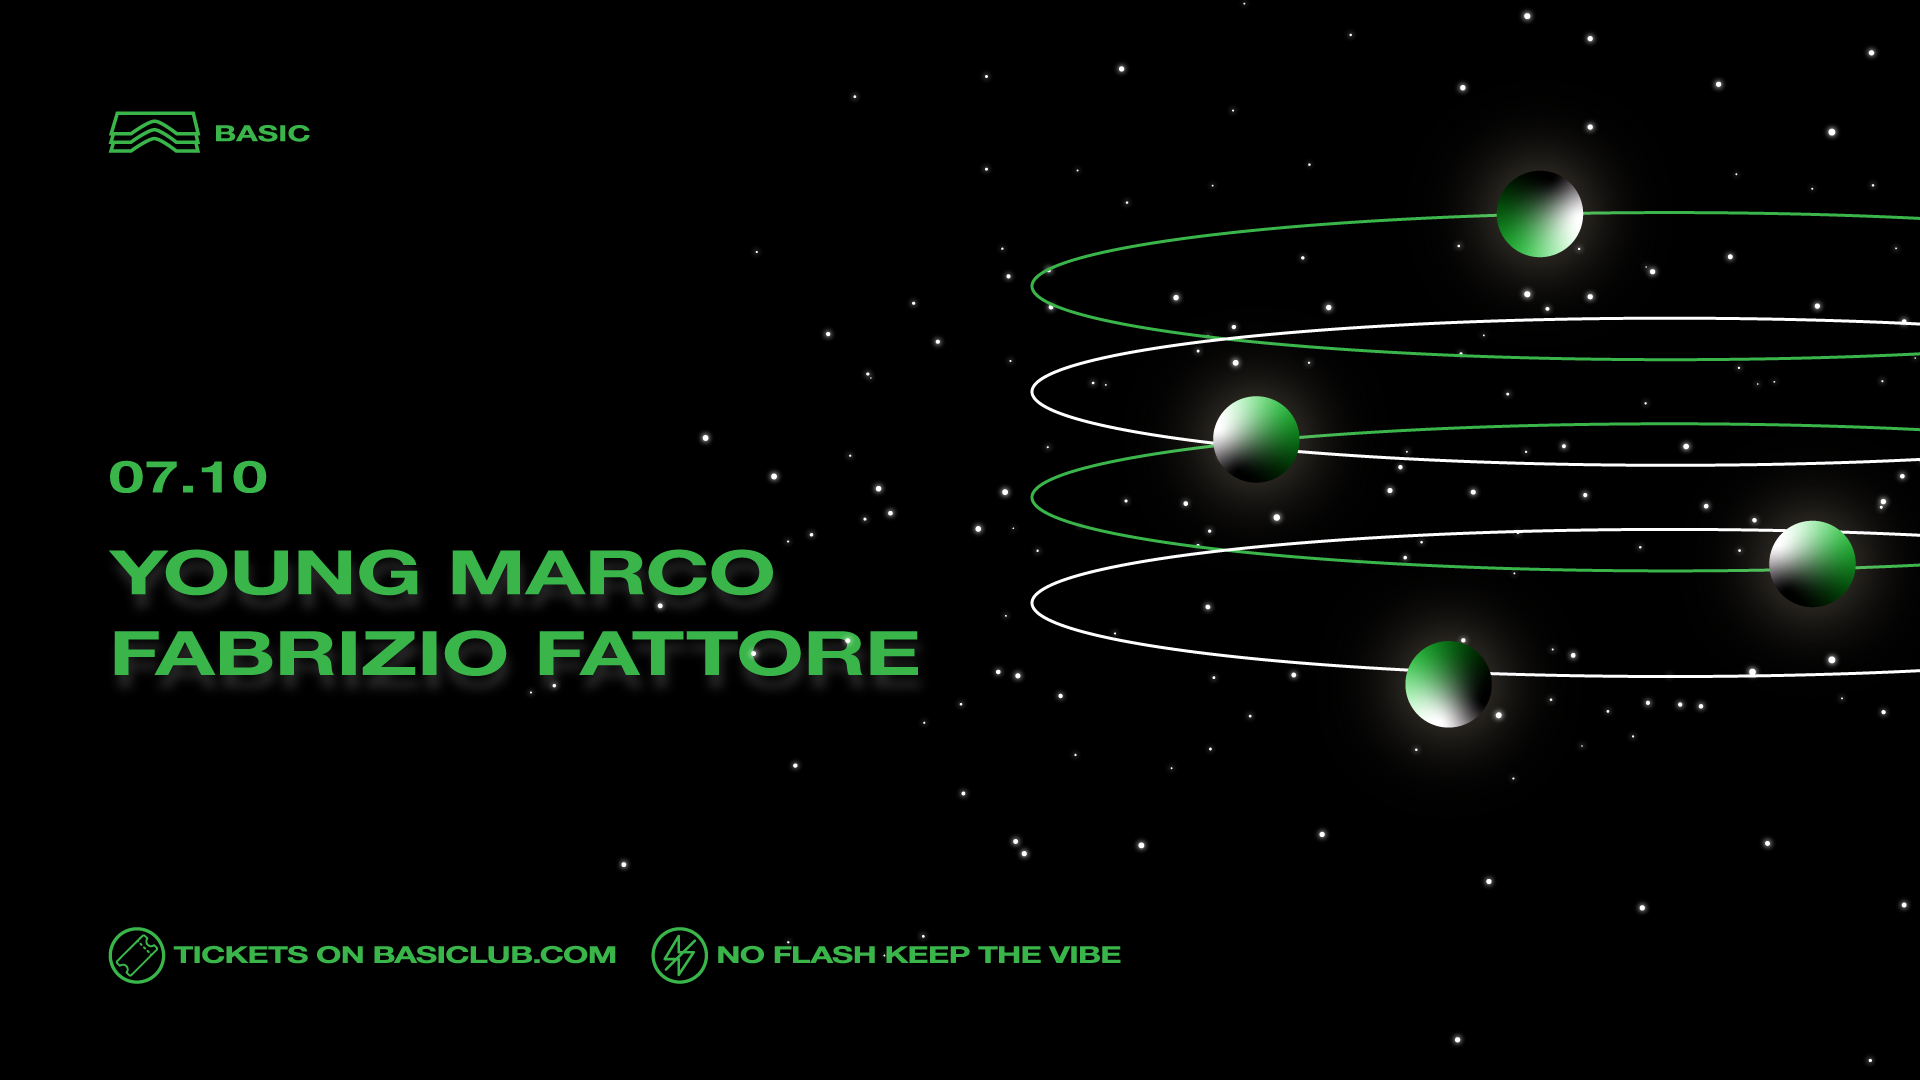 Basic • Young Marco + Fabrizio Fattore - フライヤー表